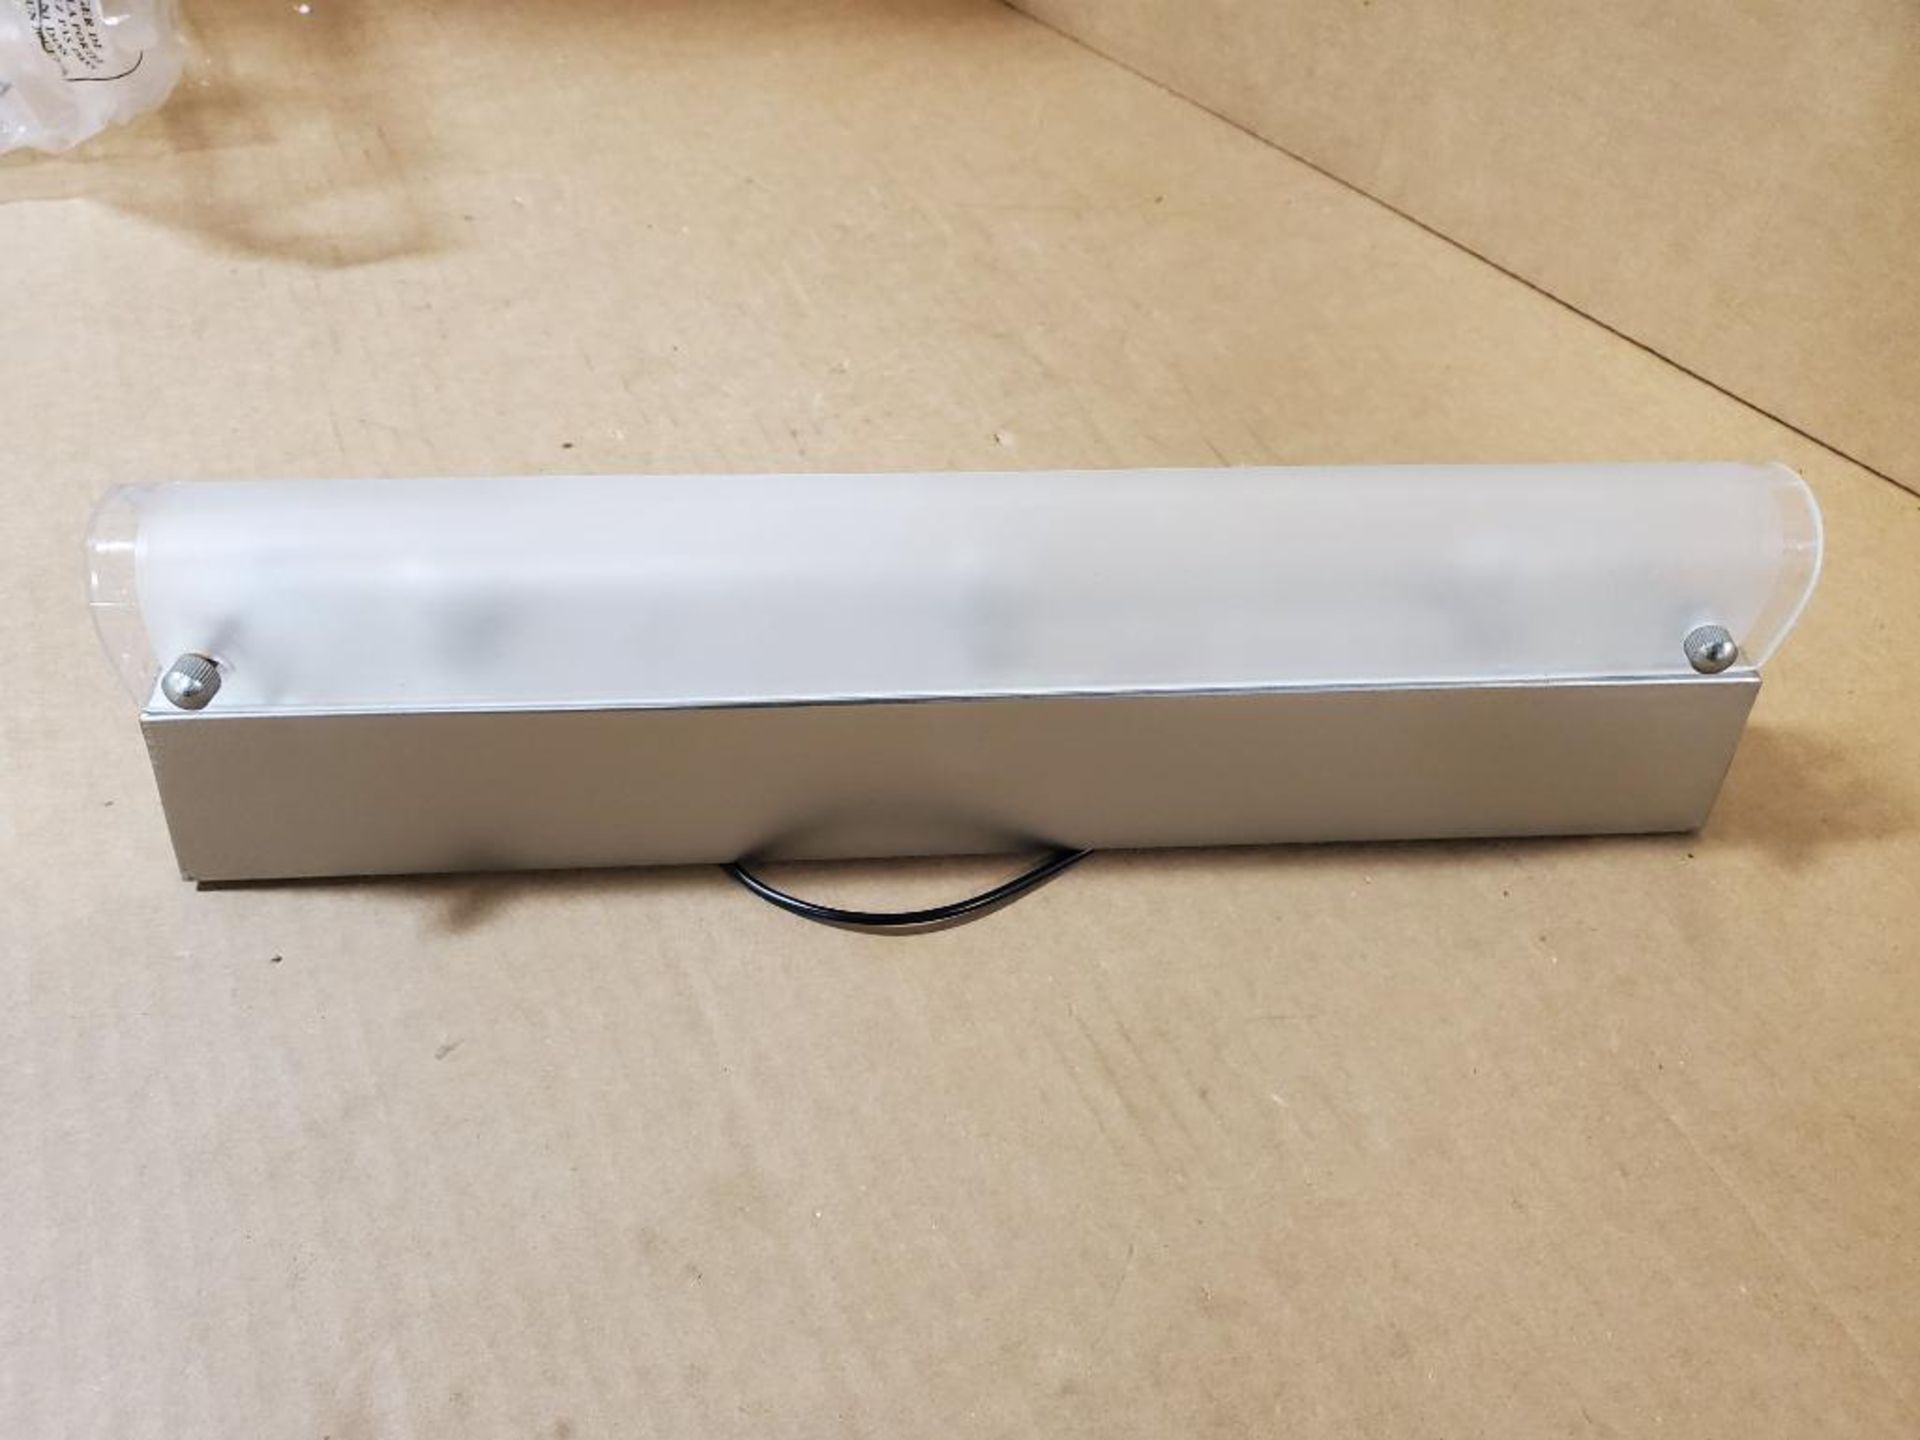 Qty 104 - SunLink 3-LT bath bar. 15" long. Model RV-133815-401. New in bulk box.